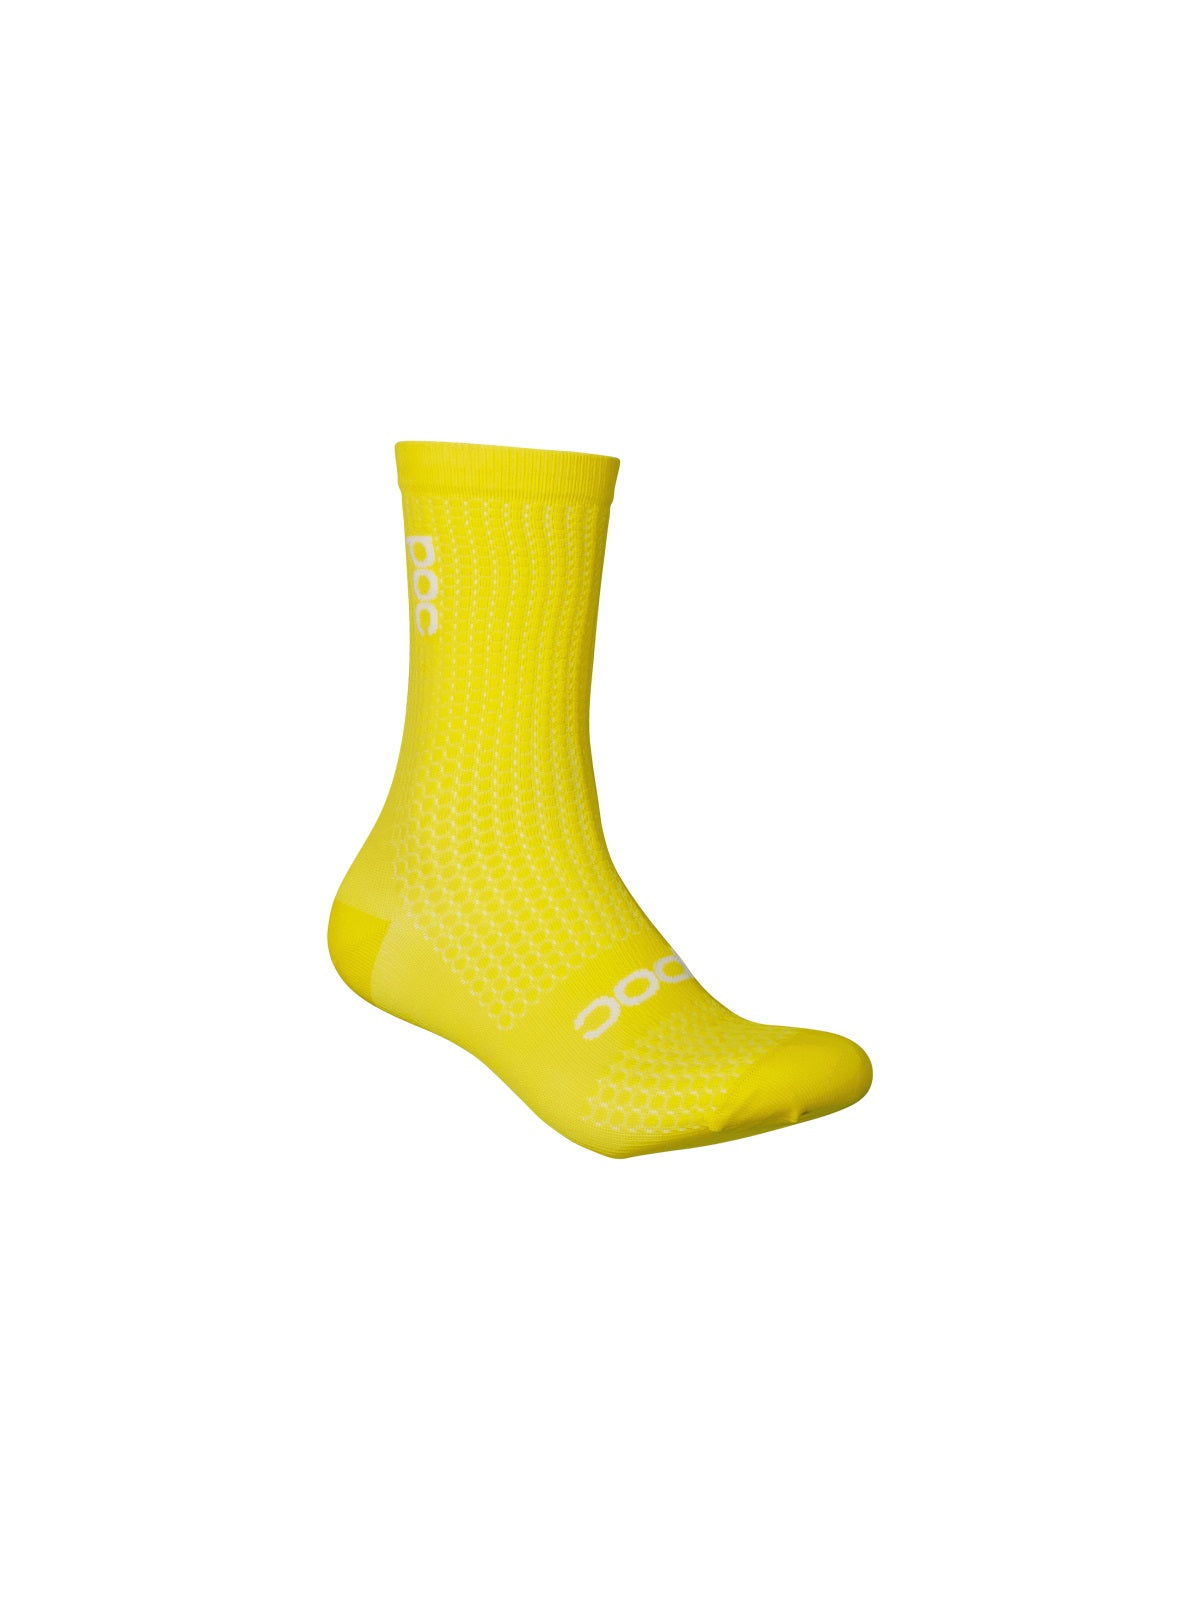 Skarpety rowerowe juniorskie POC Y's Essential Road Sock - Avent. Yellow